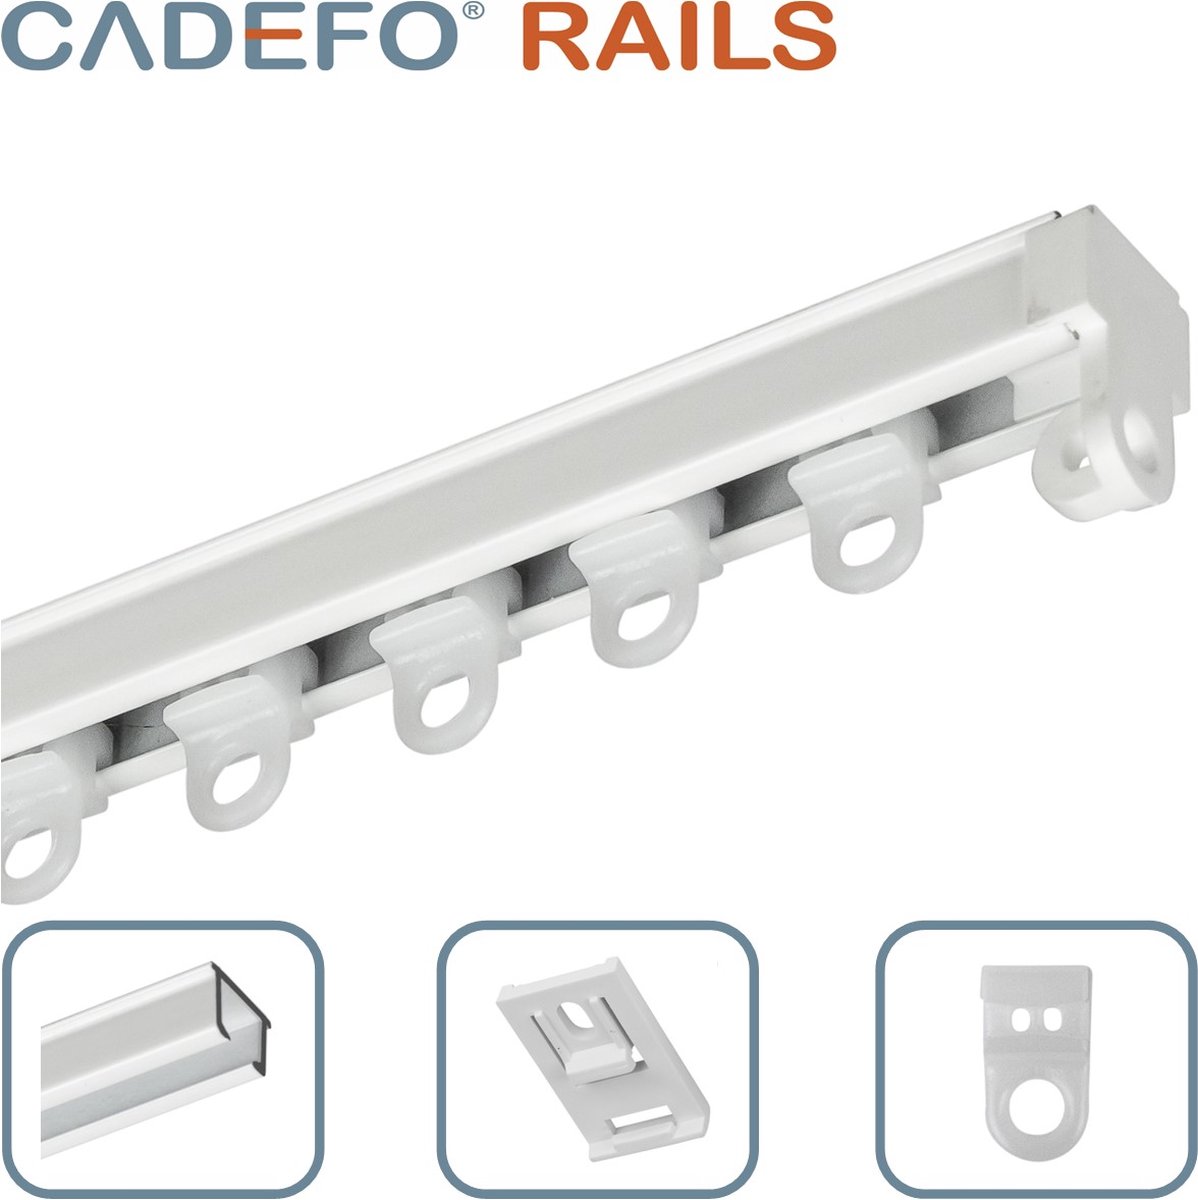 CADEFO RAILS (401 - 450 cm) Gordijnrails - Compleet op maat! - UIT 1 STUK - Leverbaar tot 6 meter - Plafondbevestiging - Lengte 409 cm